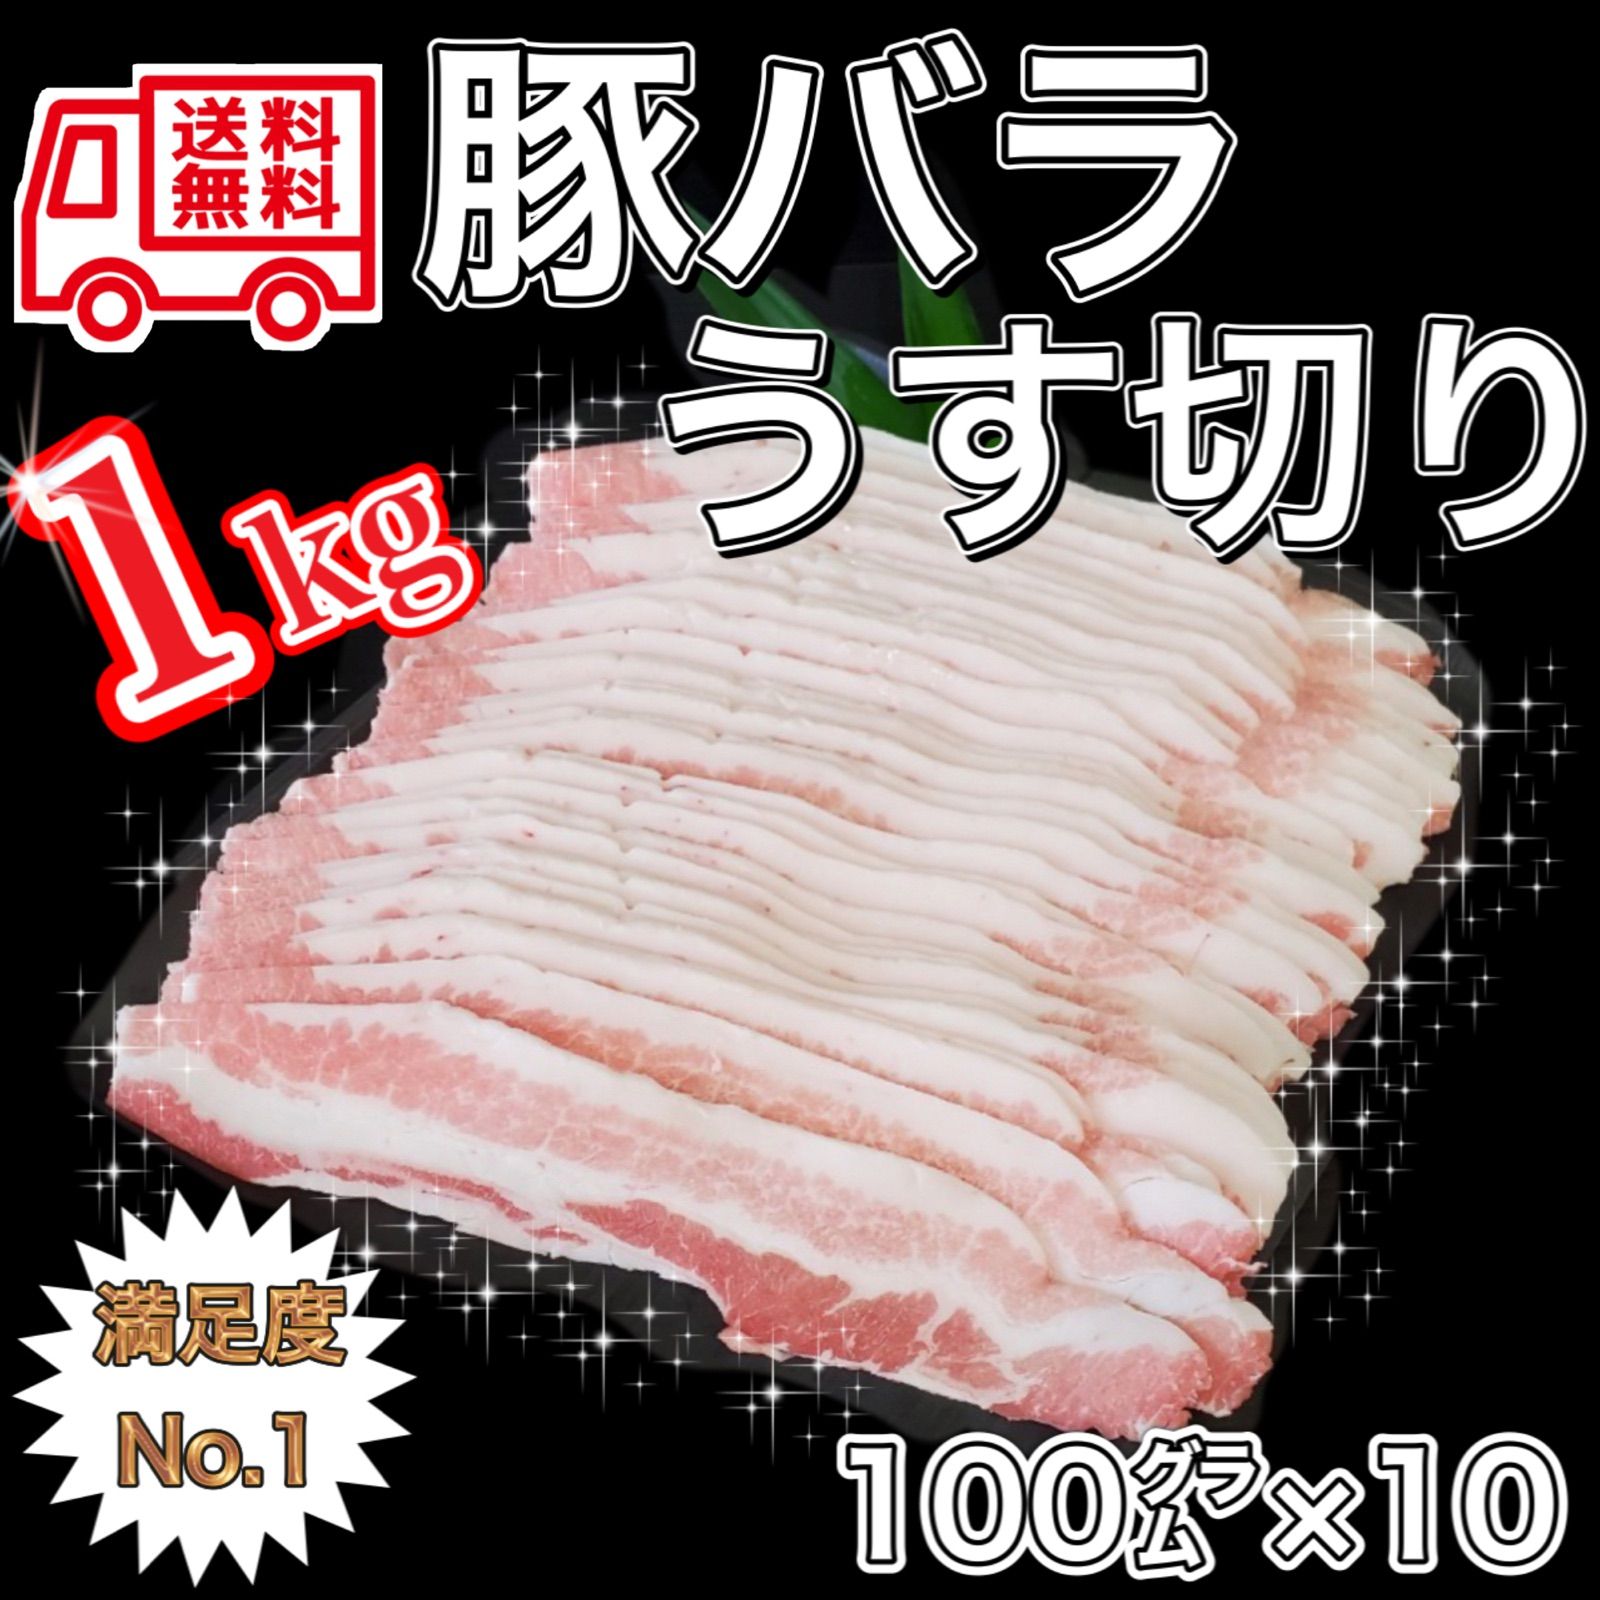 【家庭応援】 豚バラうす切り1kg✨超小分けの100グラム❗️高品質輸入産地-0